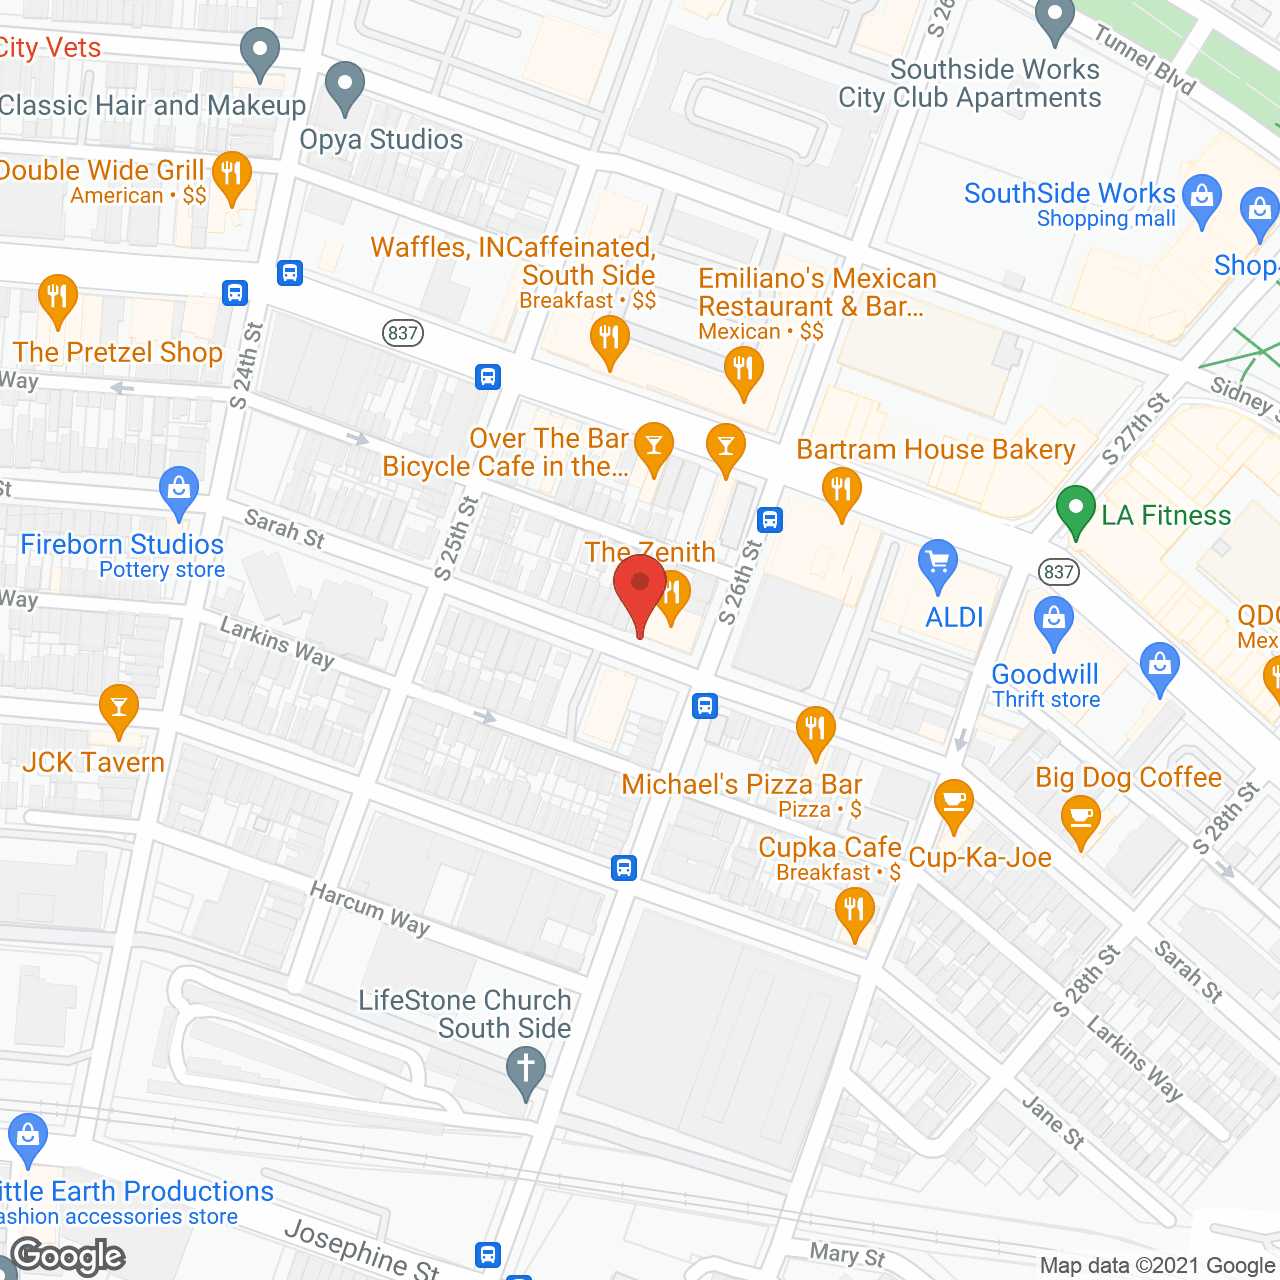 Hillcrest Senior Residences in google map